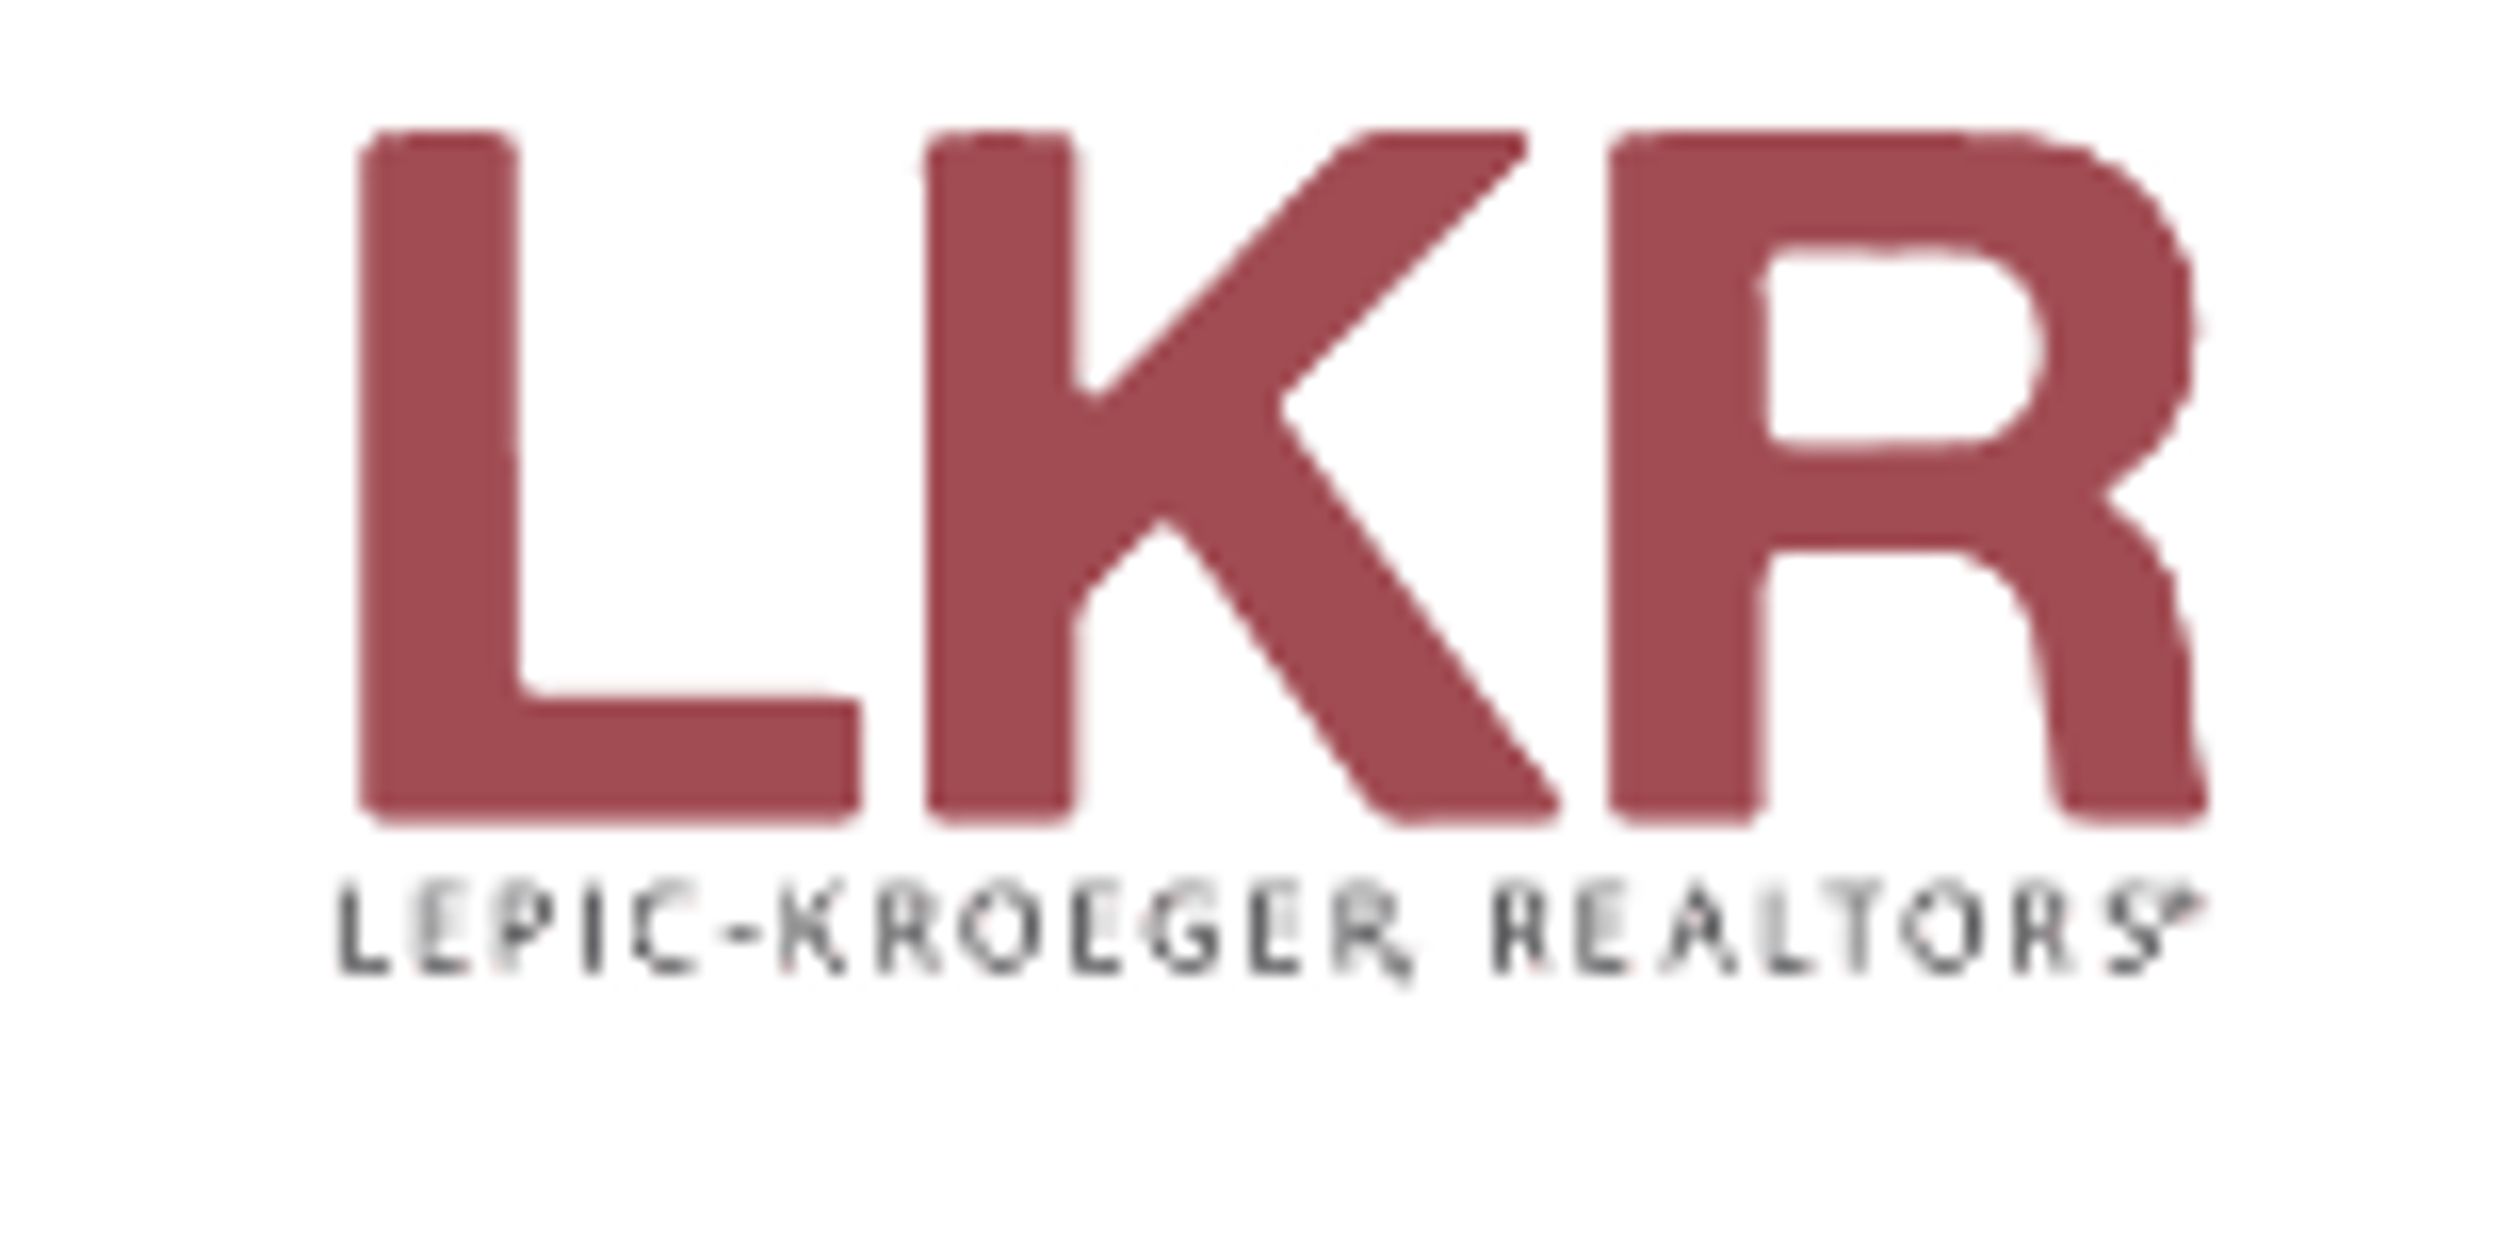 Company logo of Lepic - Kroeger Realtors